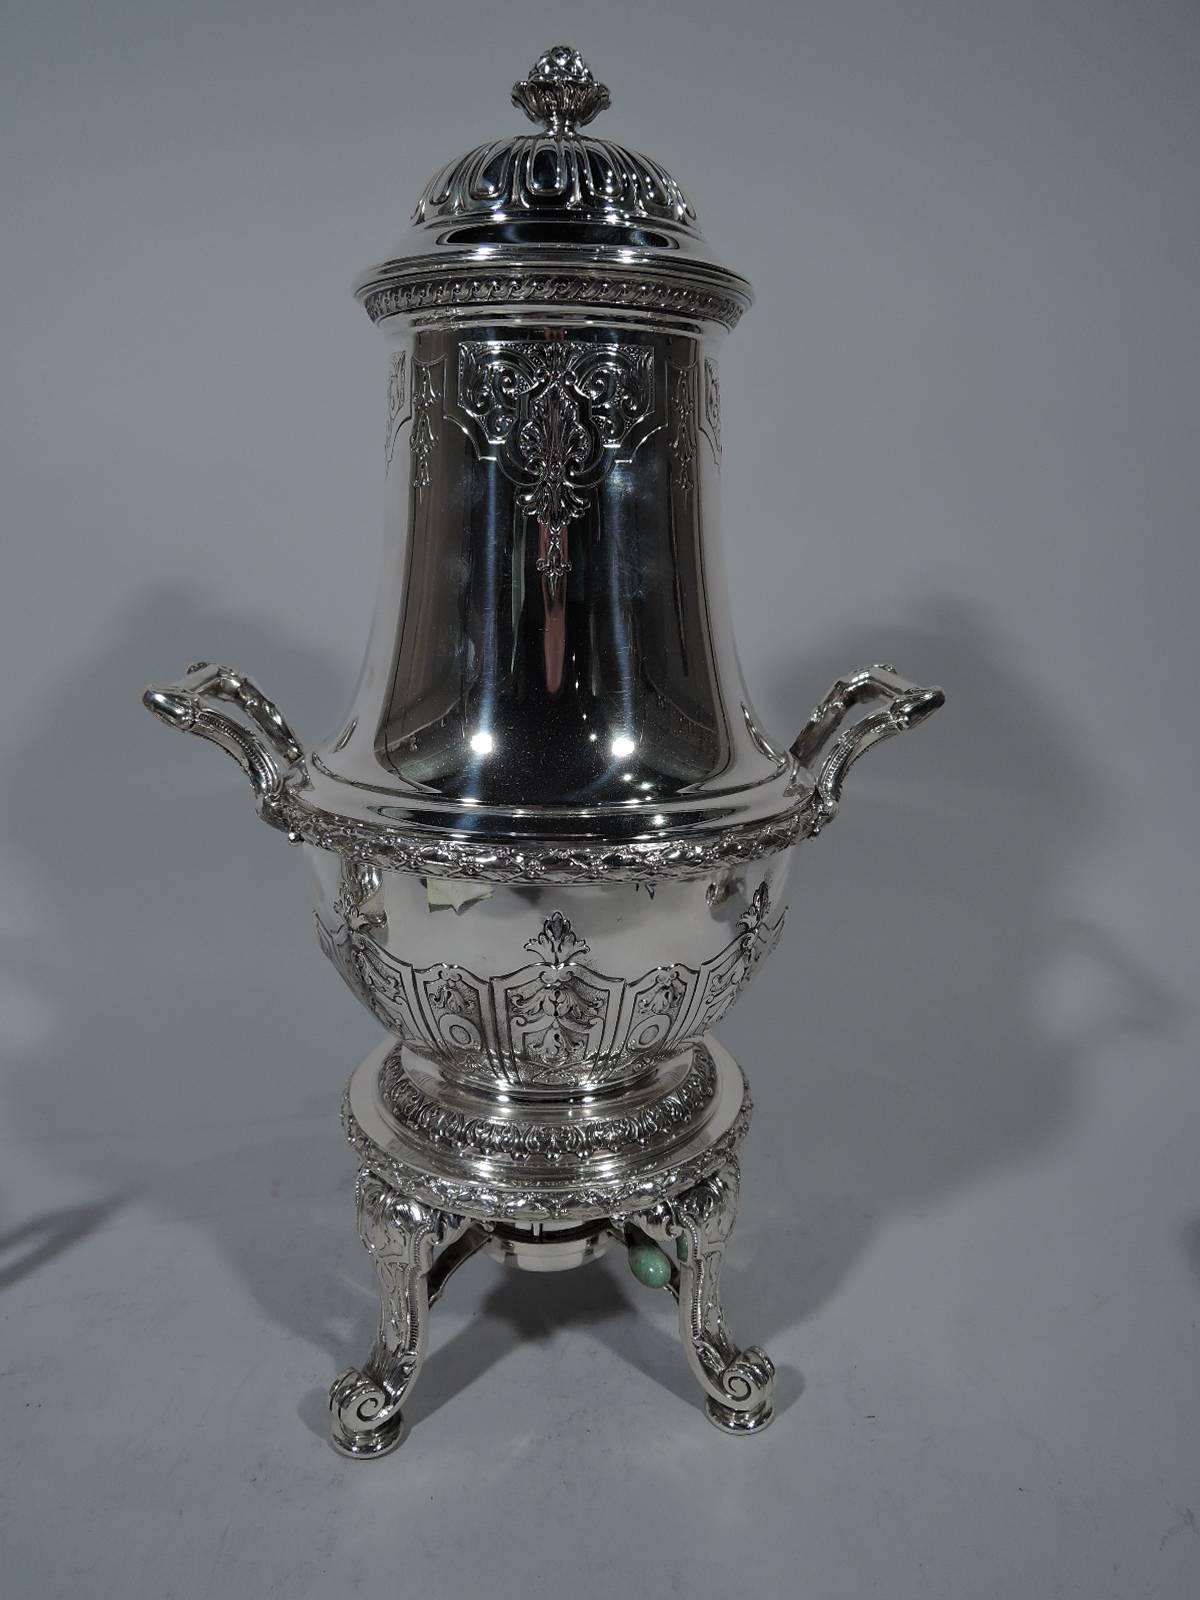 Edwardian Antique Gorham Sterling Silver Tea Set with Jade-Mounted Urn